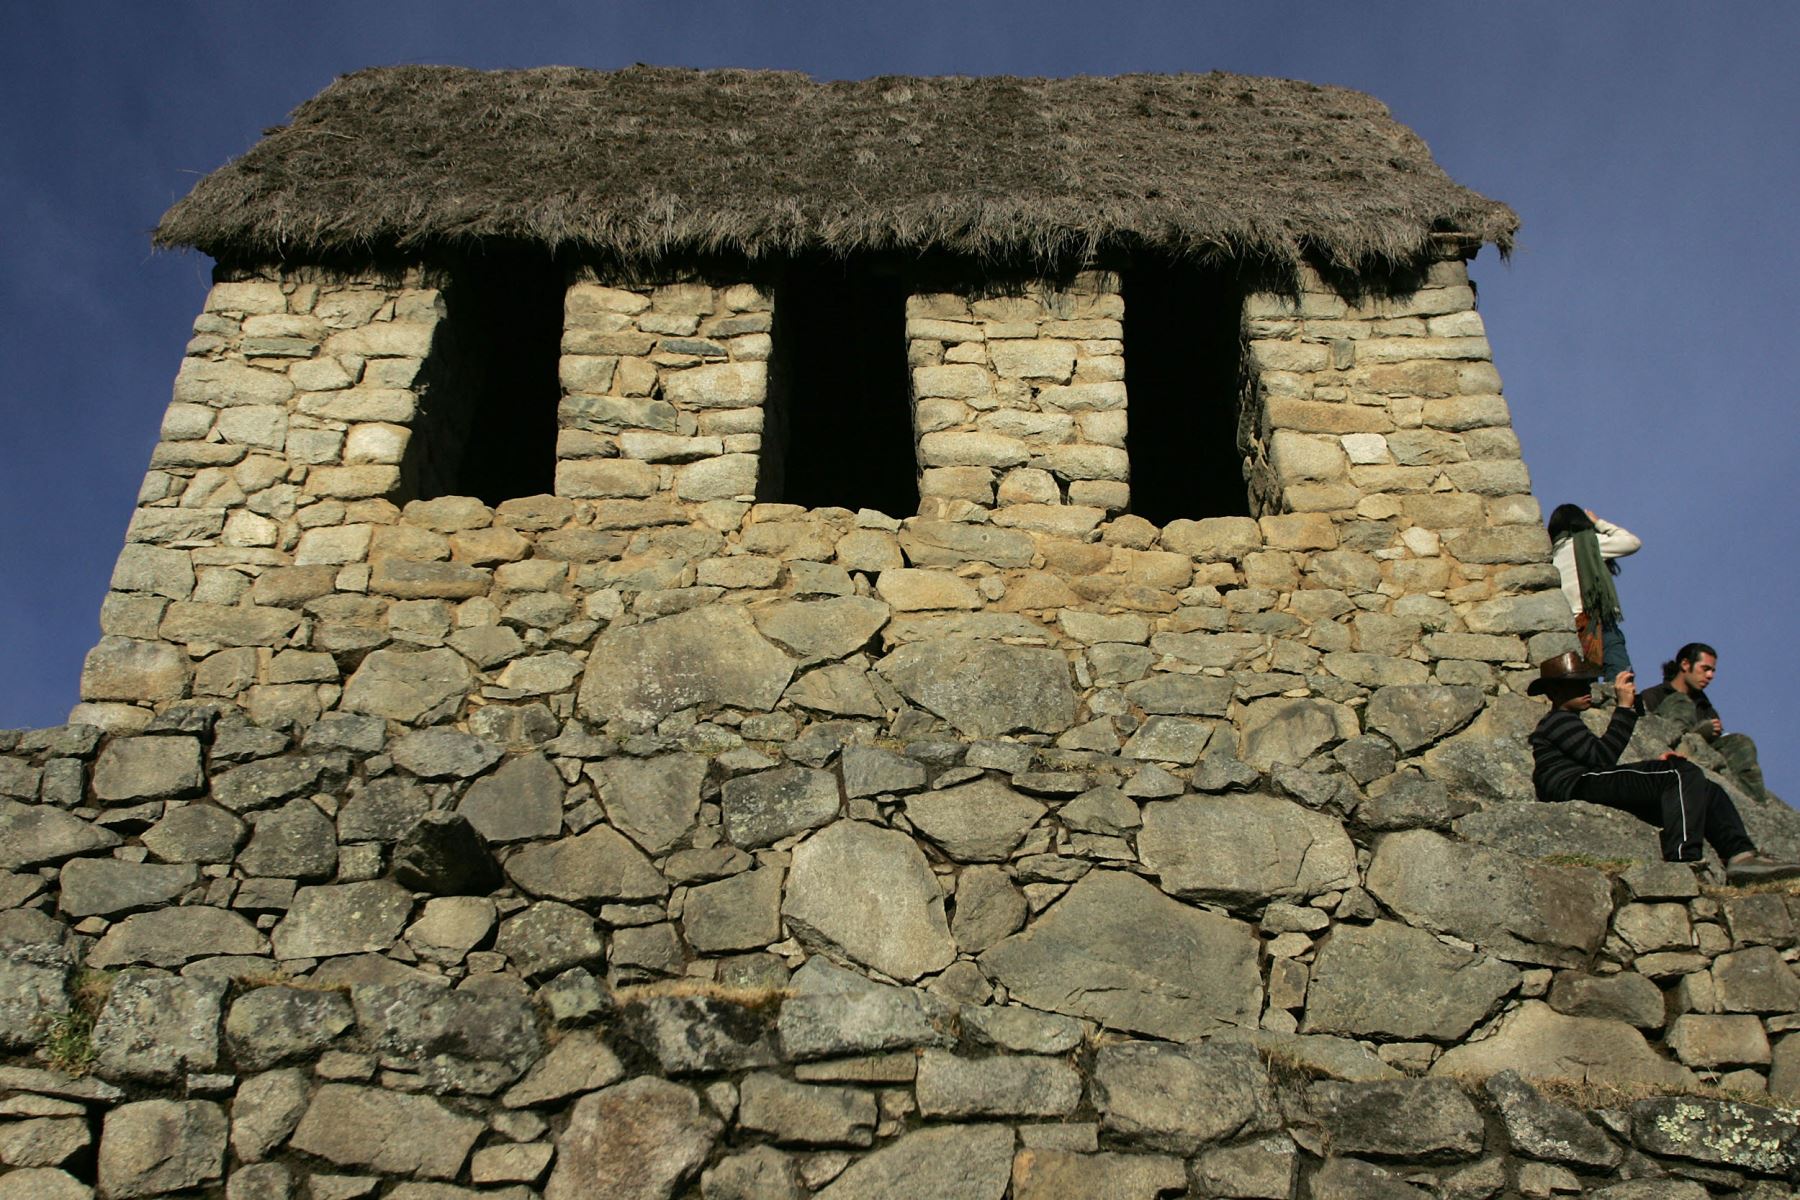 Casa situadas en las ruinas de la Ciudadela Inca de Machu Picchu en Cusco, el 23 de junio de 2007.AFP